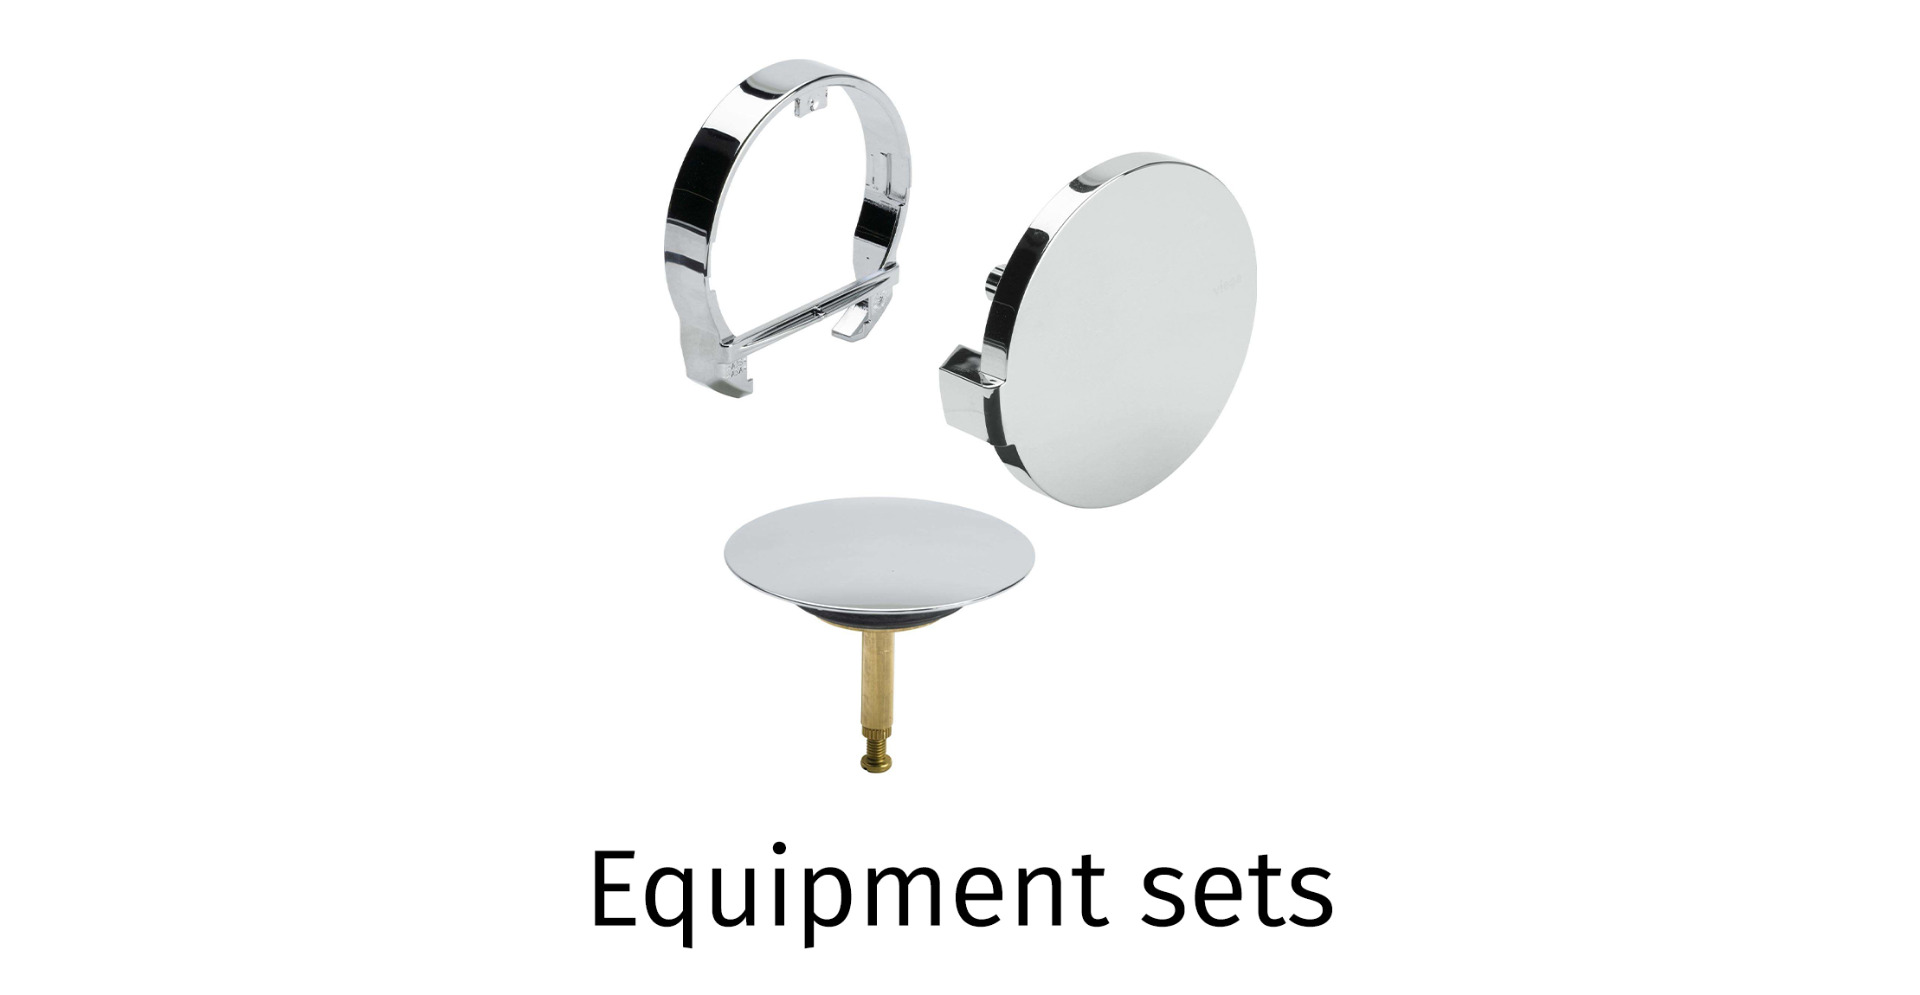 Equipment sets